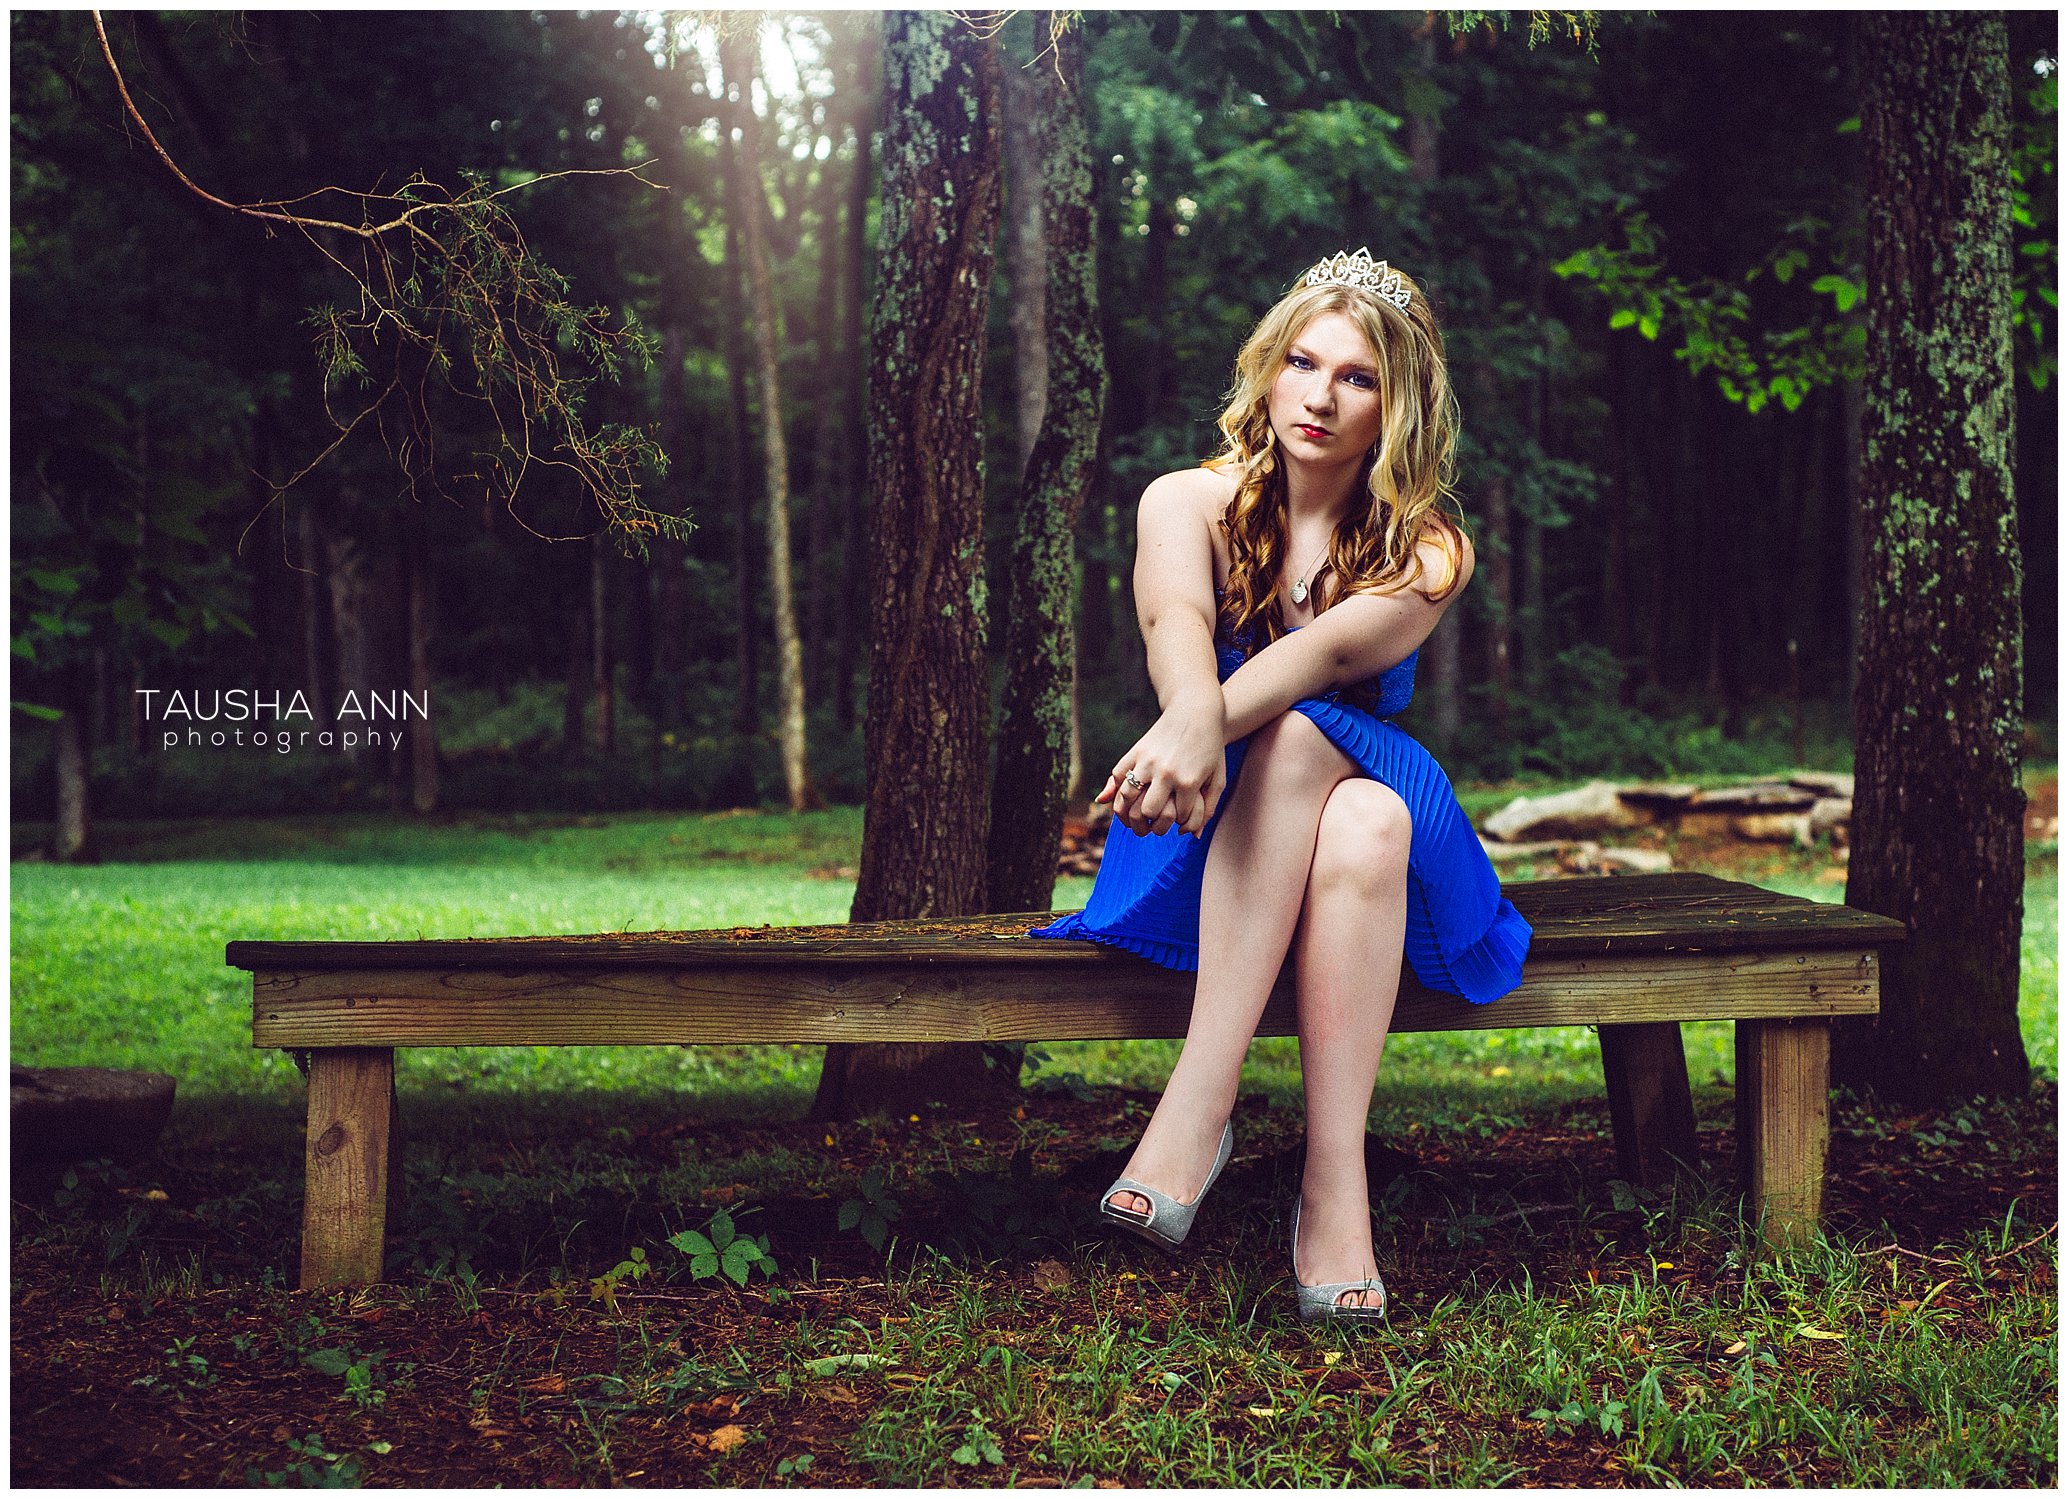 Sammie's_Sweet_16_Duck_Pond_Farm_Mt_Juliet_Tausha_Ann_Photography_Model_Nashville_Franklin_Spinning_Blue_Dress_Tiara_Sitting_On_Bench_Under_Tree